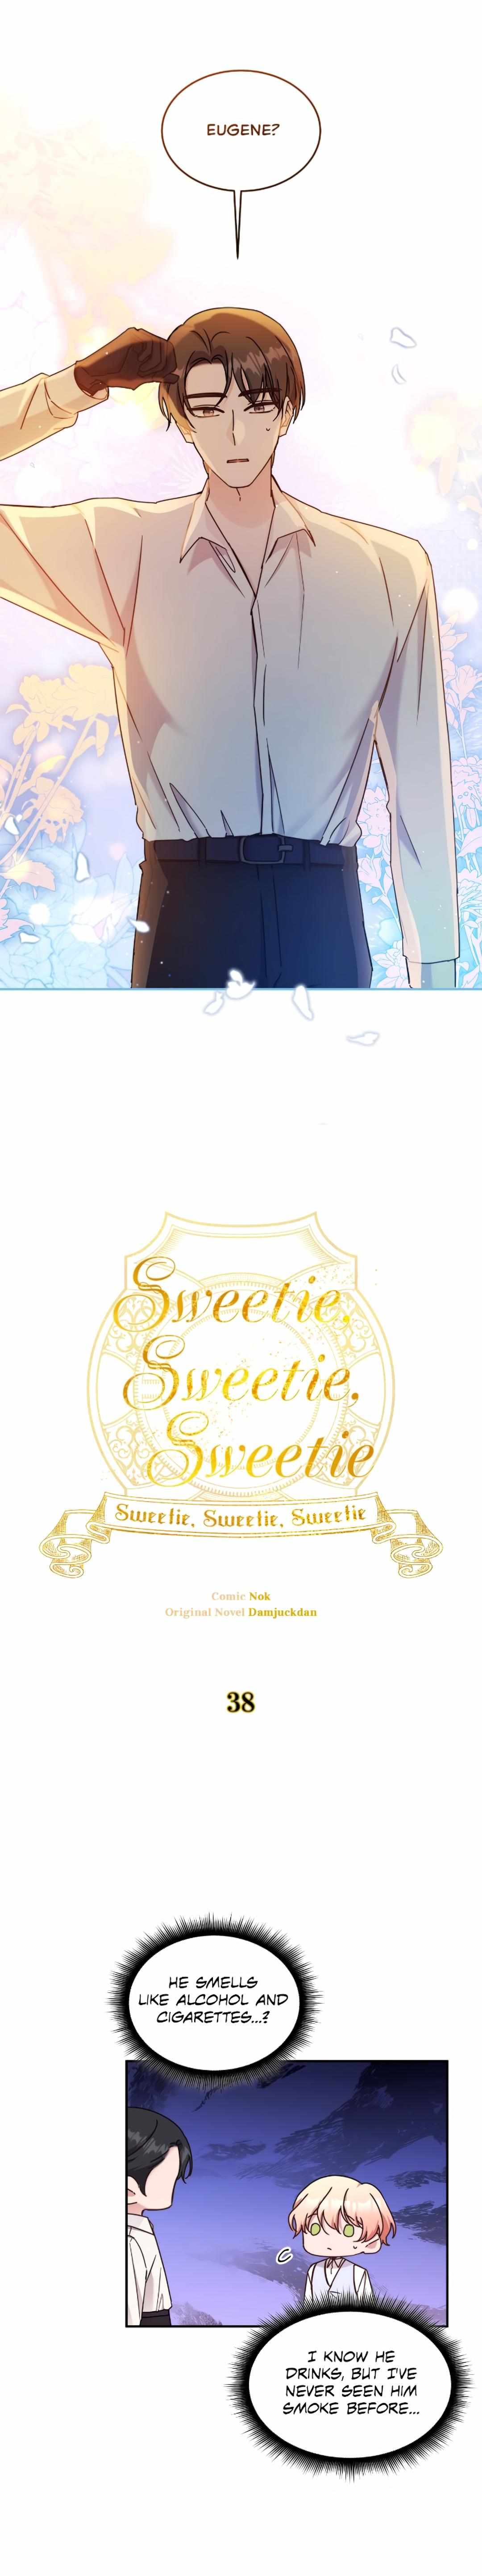 Sweetie, Sweetie, Sweetie - chapter 38 - #5